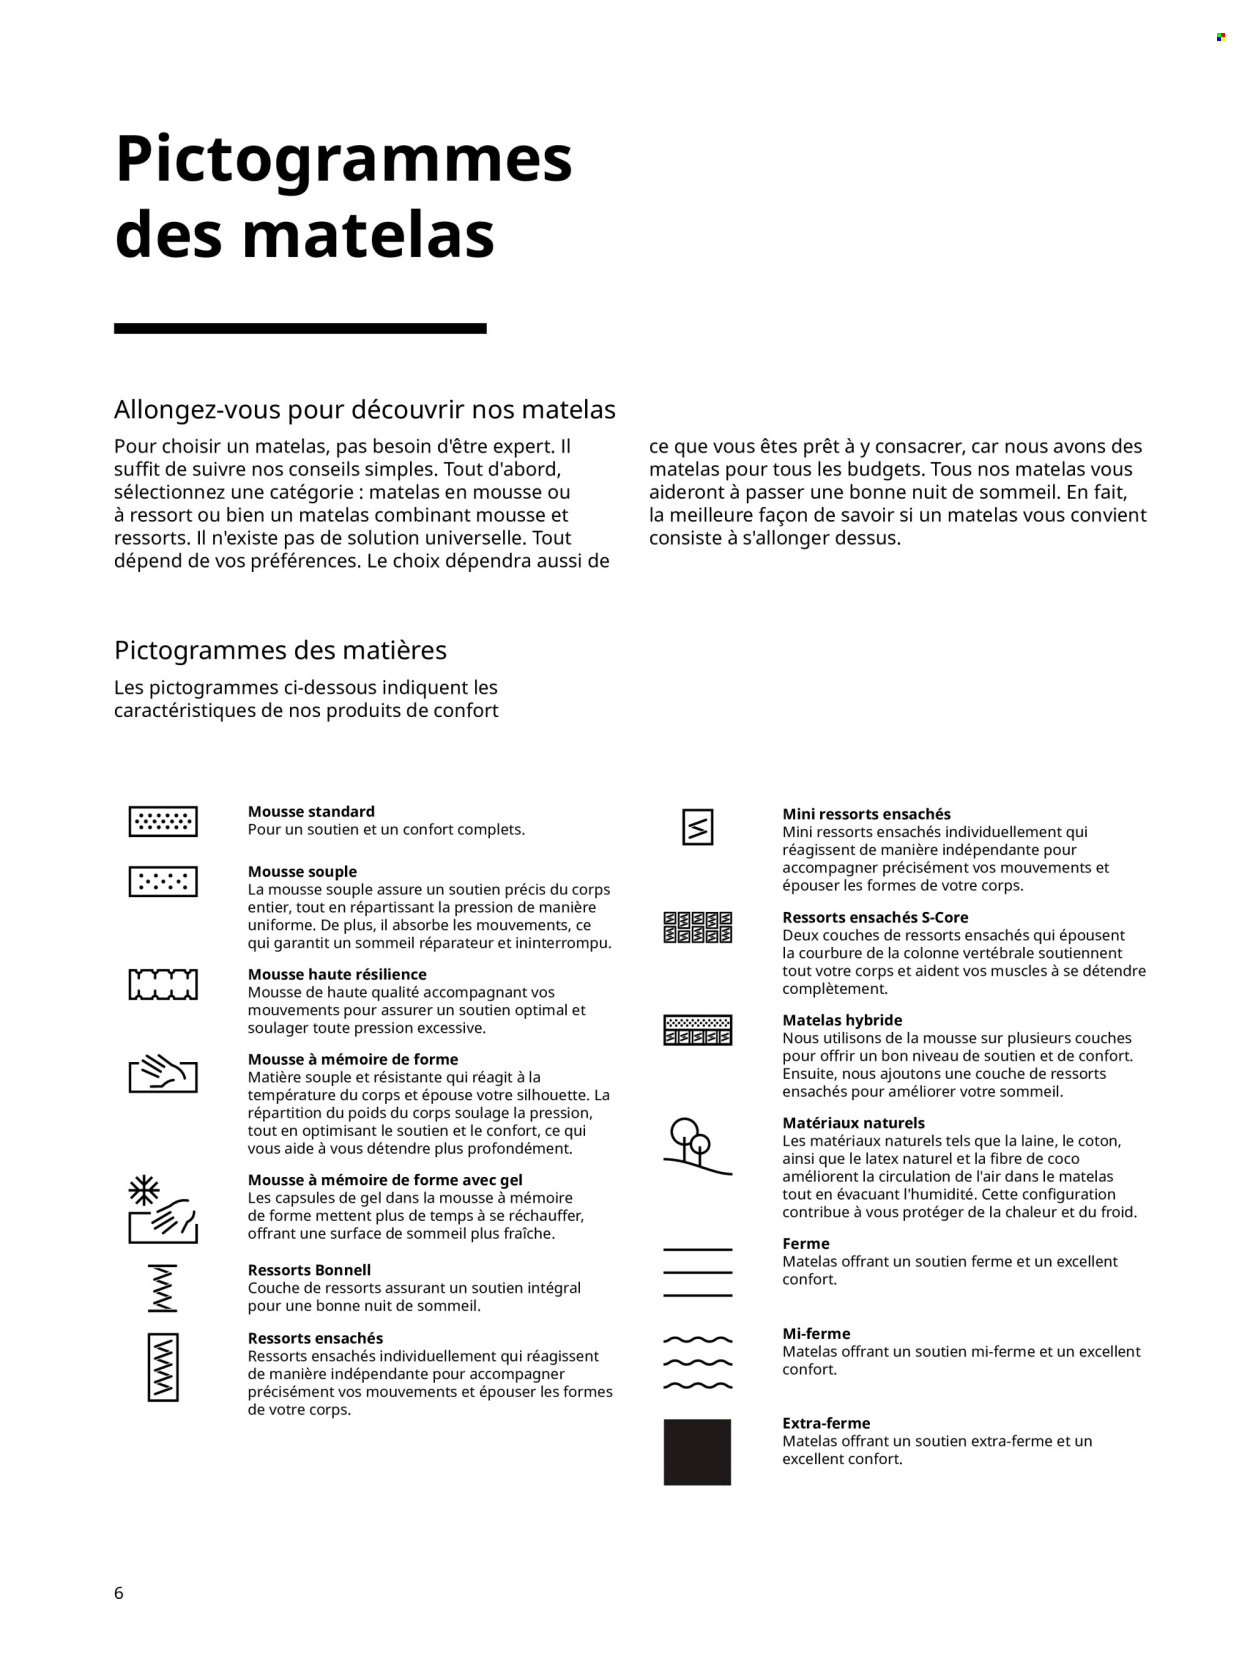 Catalogue IKEA. 